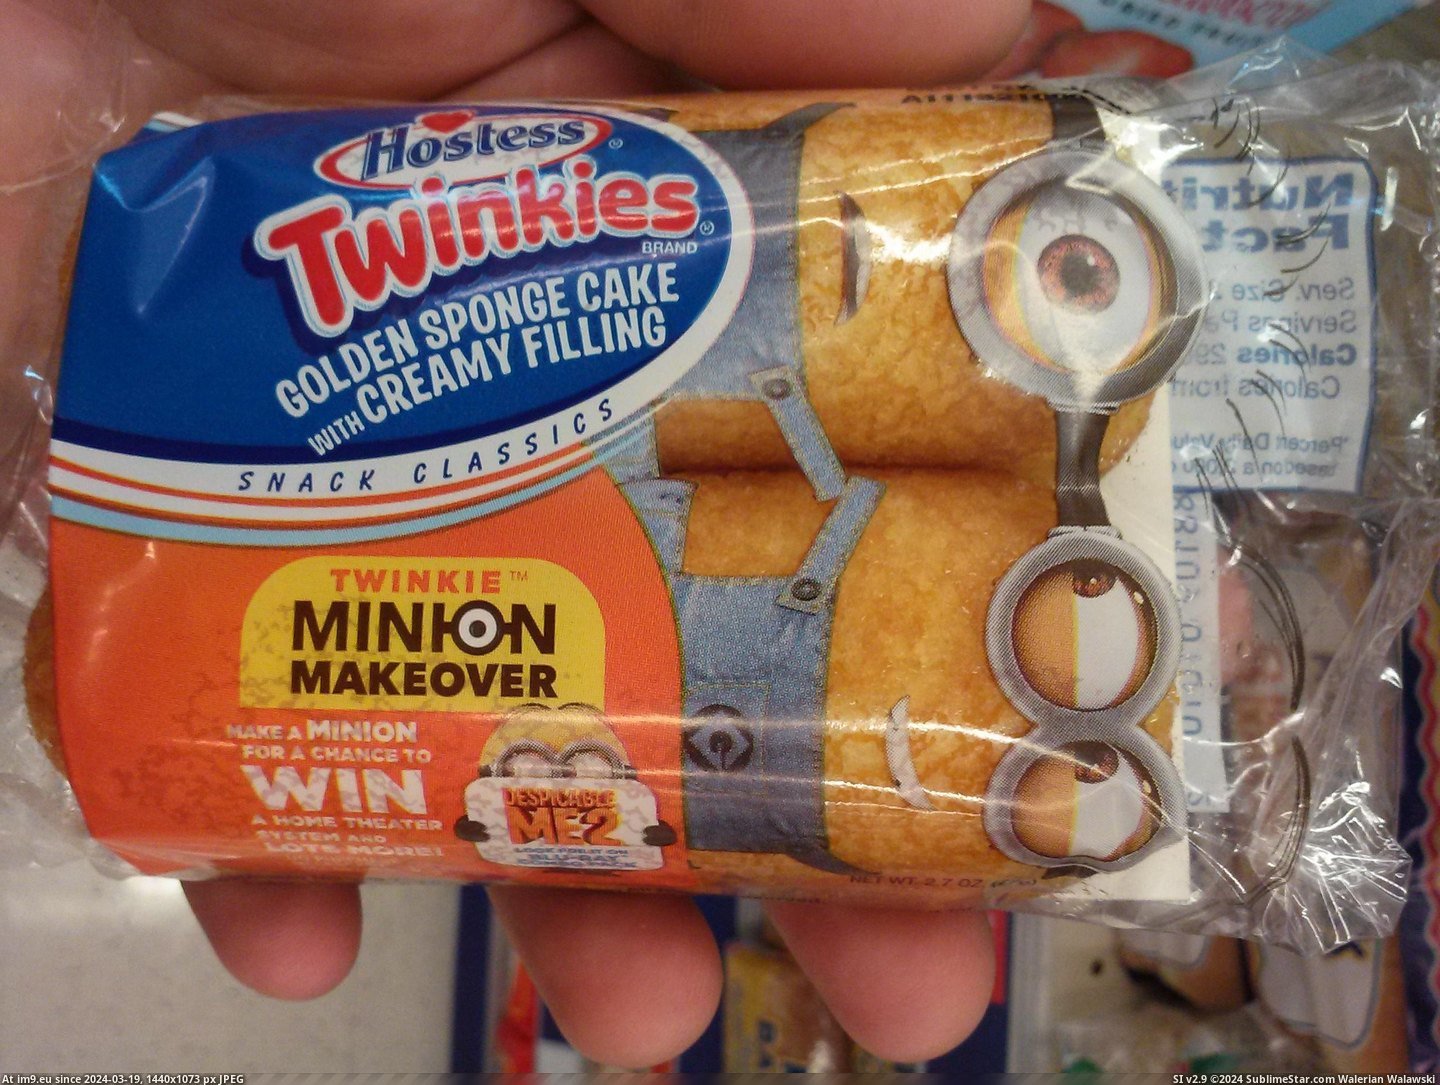 #New #Twinkies #Packaging [Mildlyinteresting] Has anyone seen the new Twinkies packaging? Pic. (Изображение из альбом My r/MILDLYINTERESTING favs))